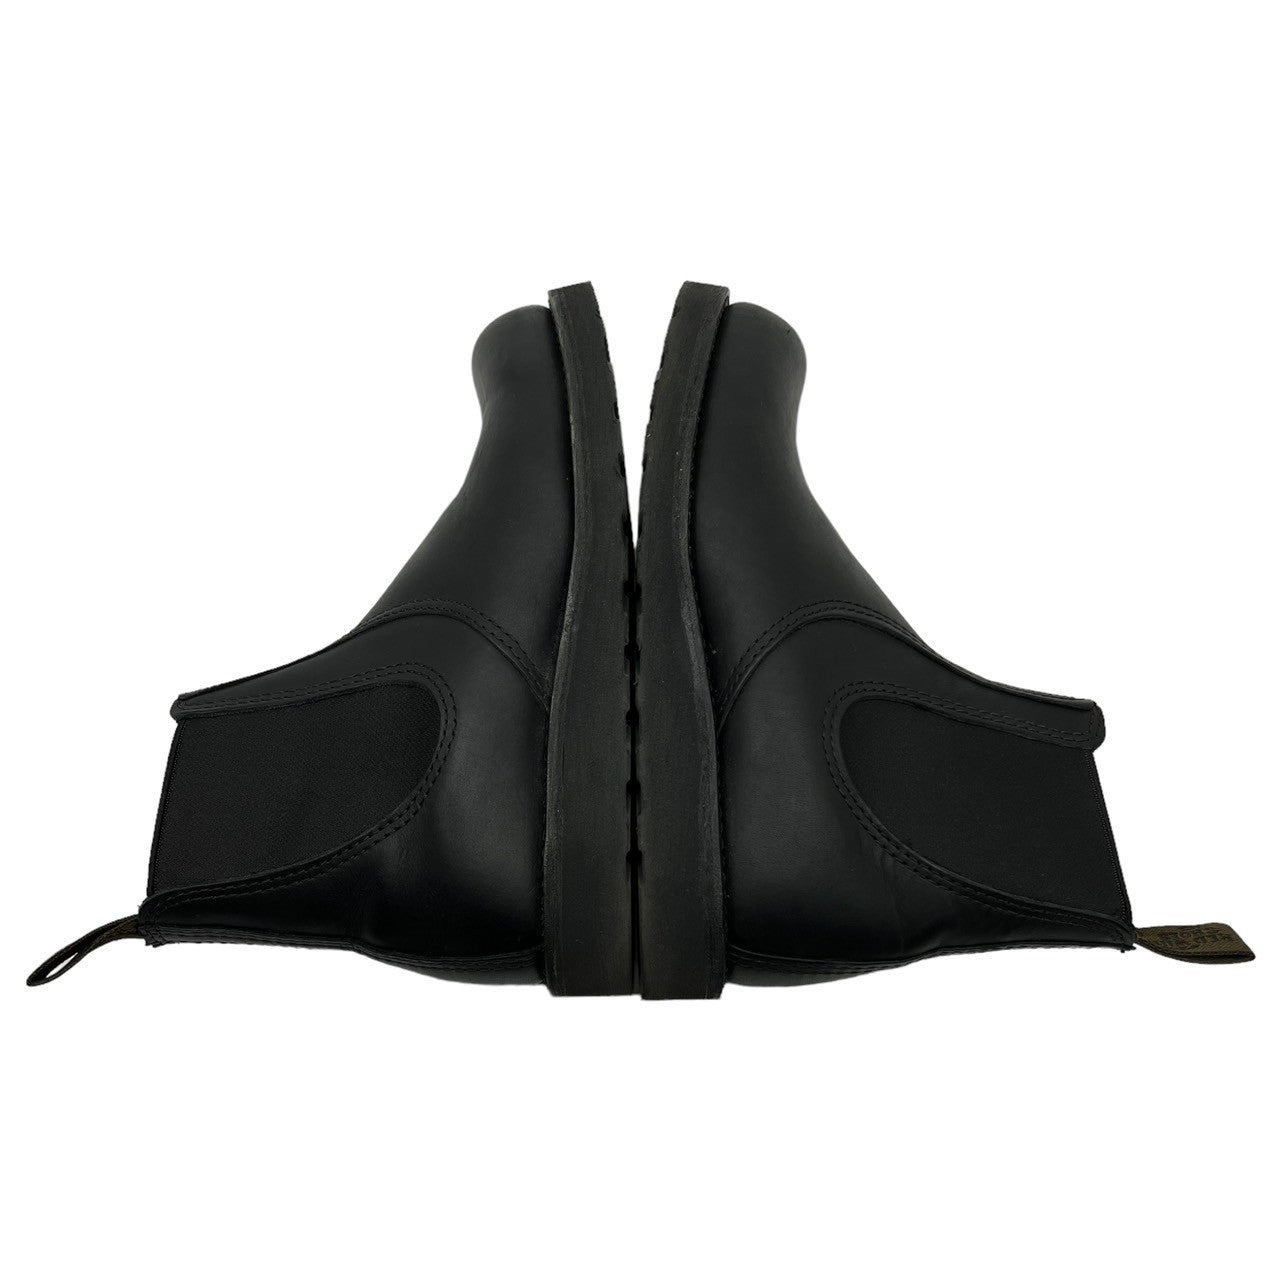 REDWING(レッドウィング) CLASSIC CHELSEA チェルシー ブーツ サイドゴア ブーツ 3194 7(25cm程度) ブラック